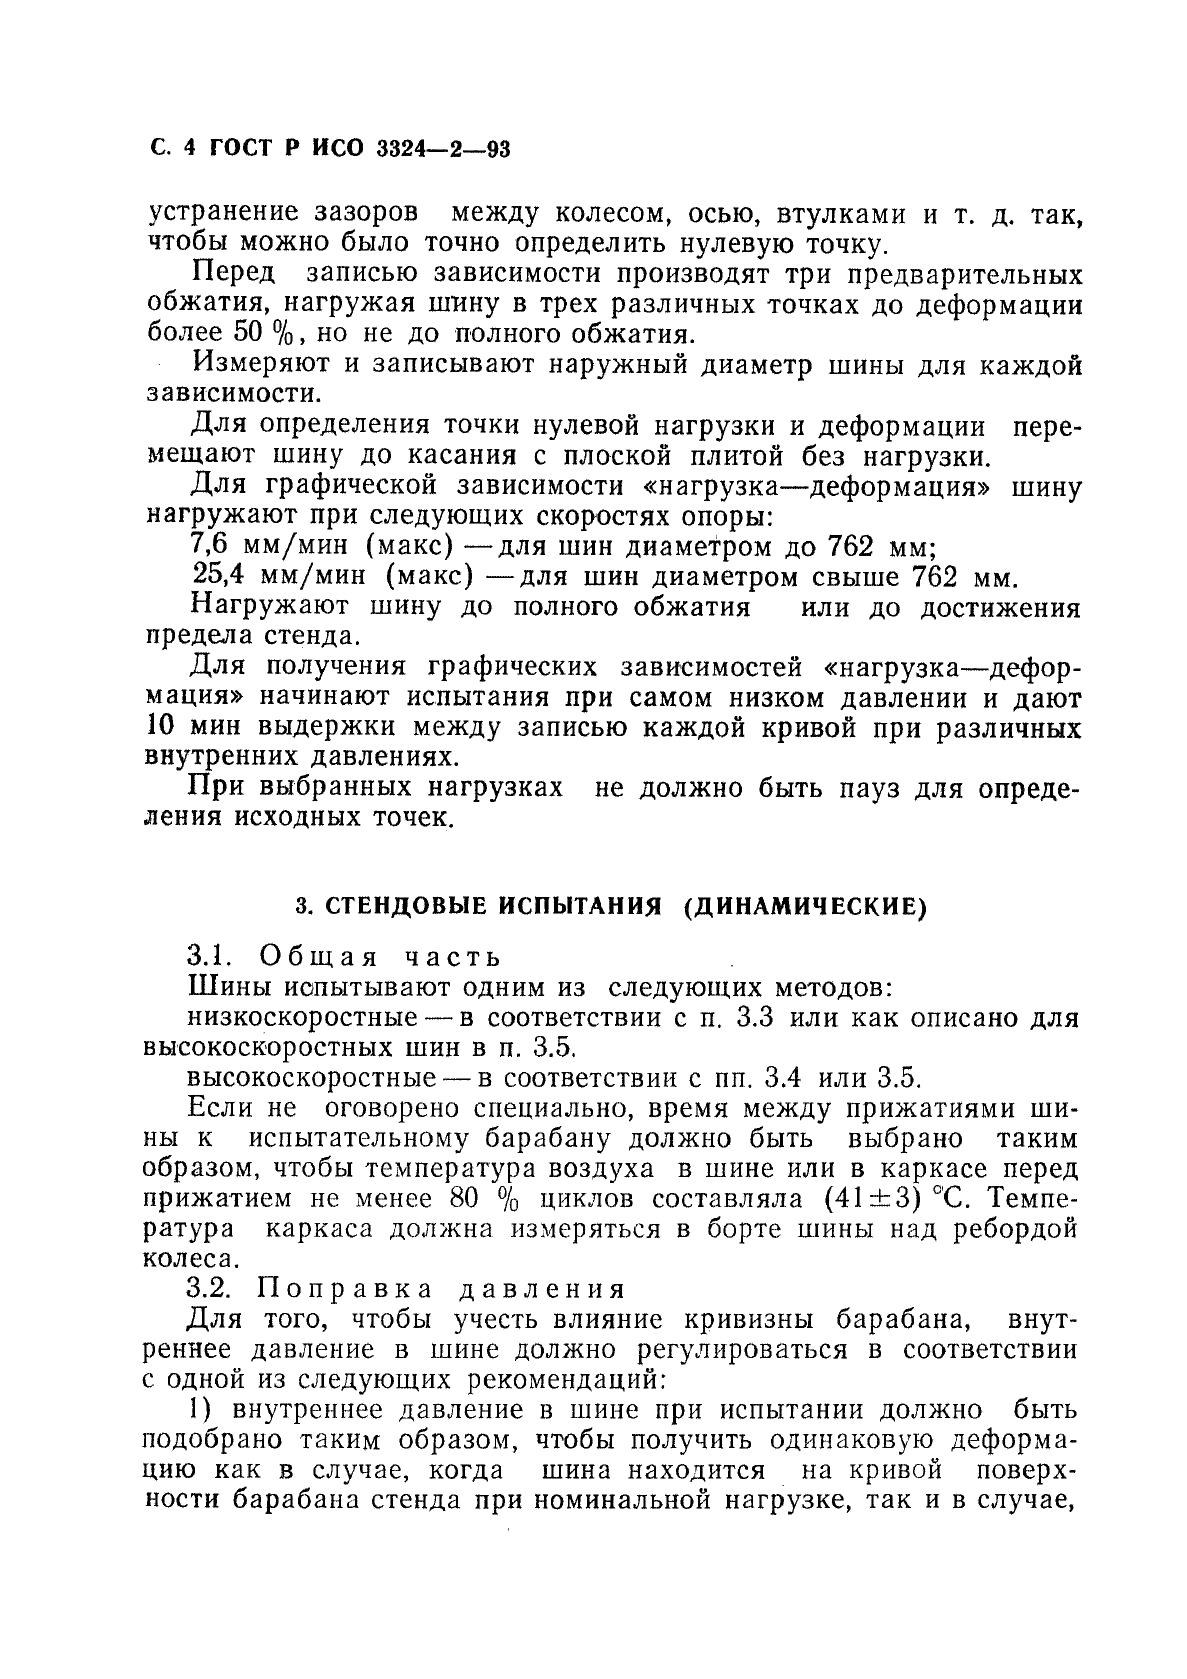 ГОСТ Р ИСО 3324-2-93 5 страница